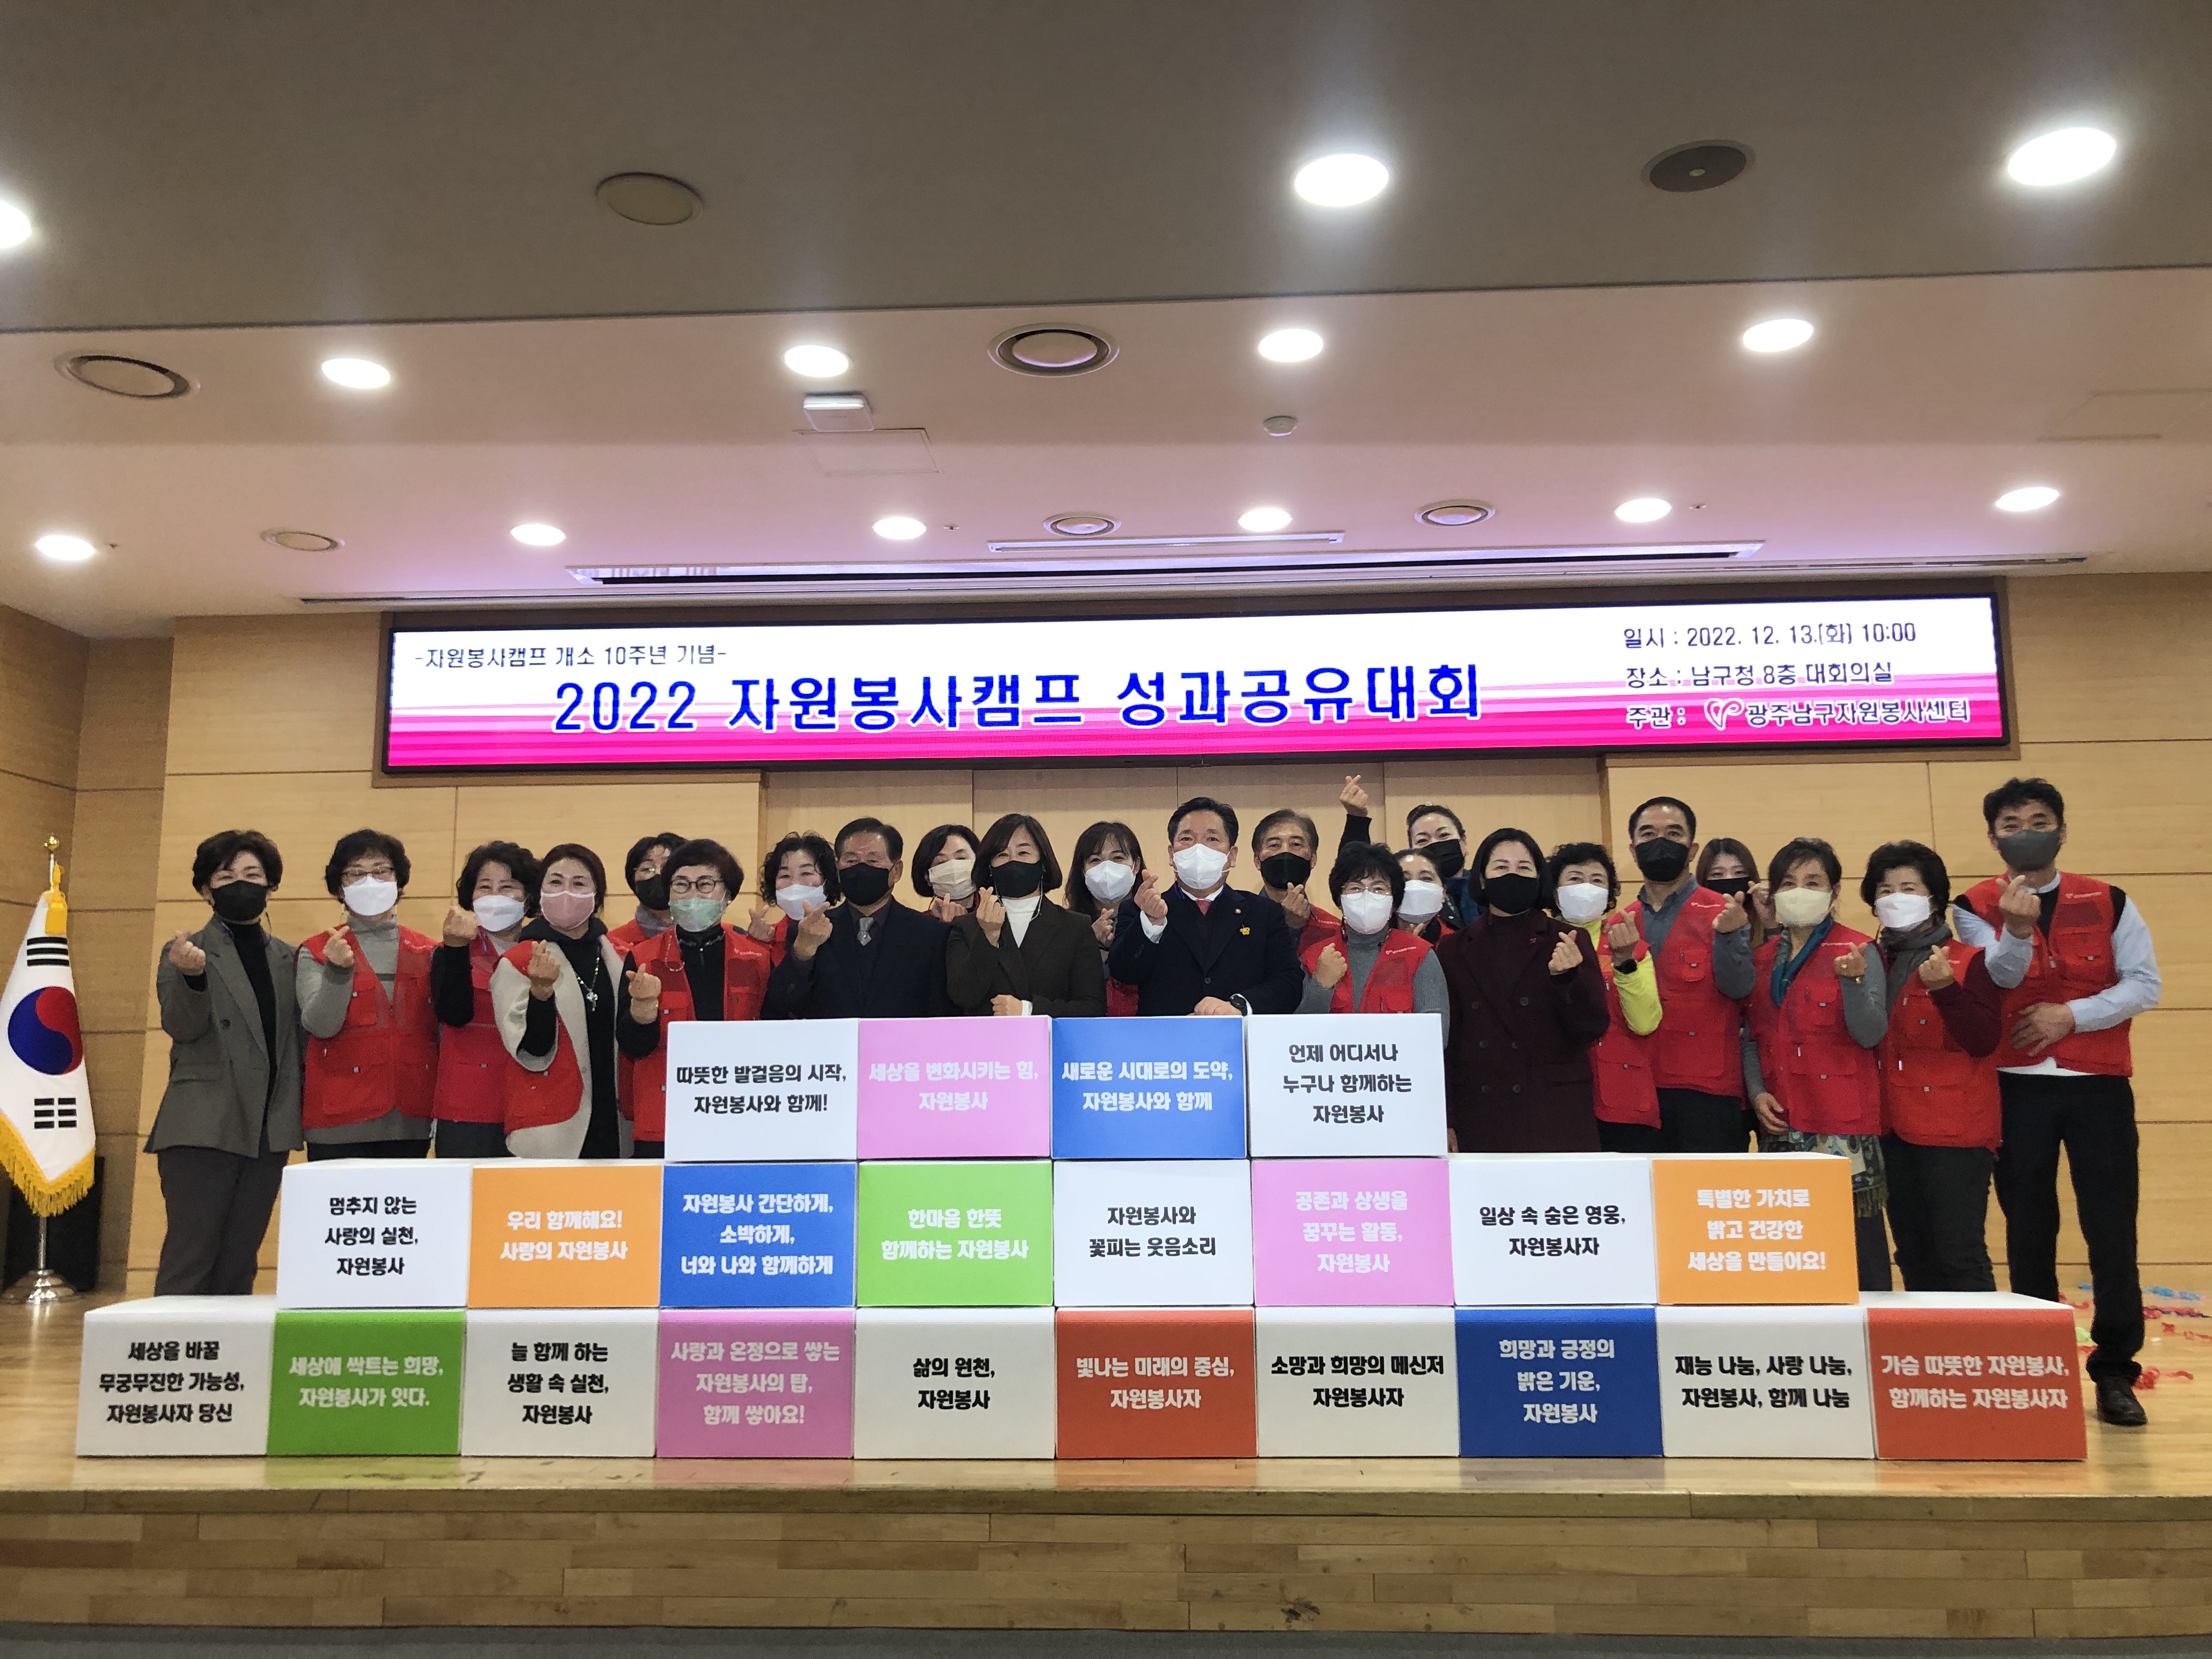 2022 자원봉사캠프 성과공유대회(자원봉사캠프 개소 10주년 기념)